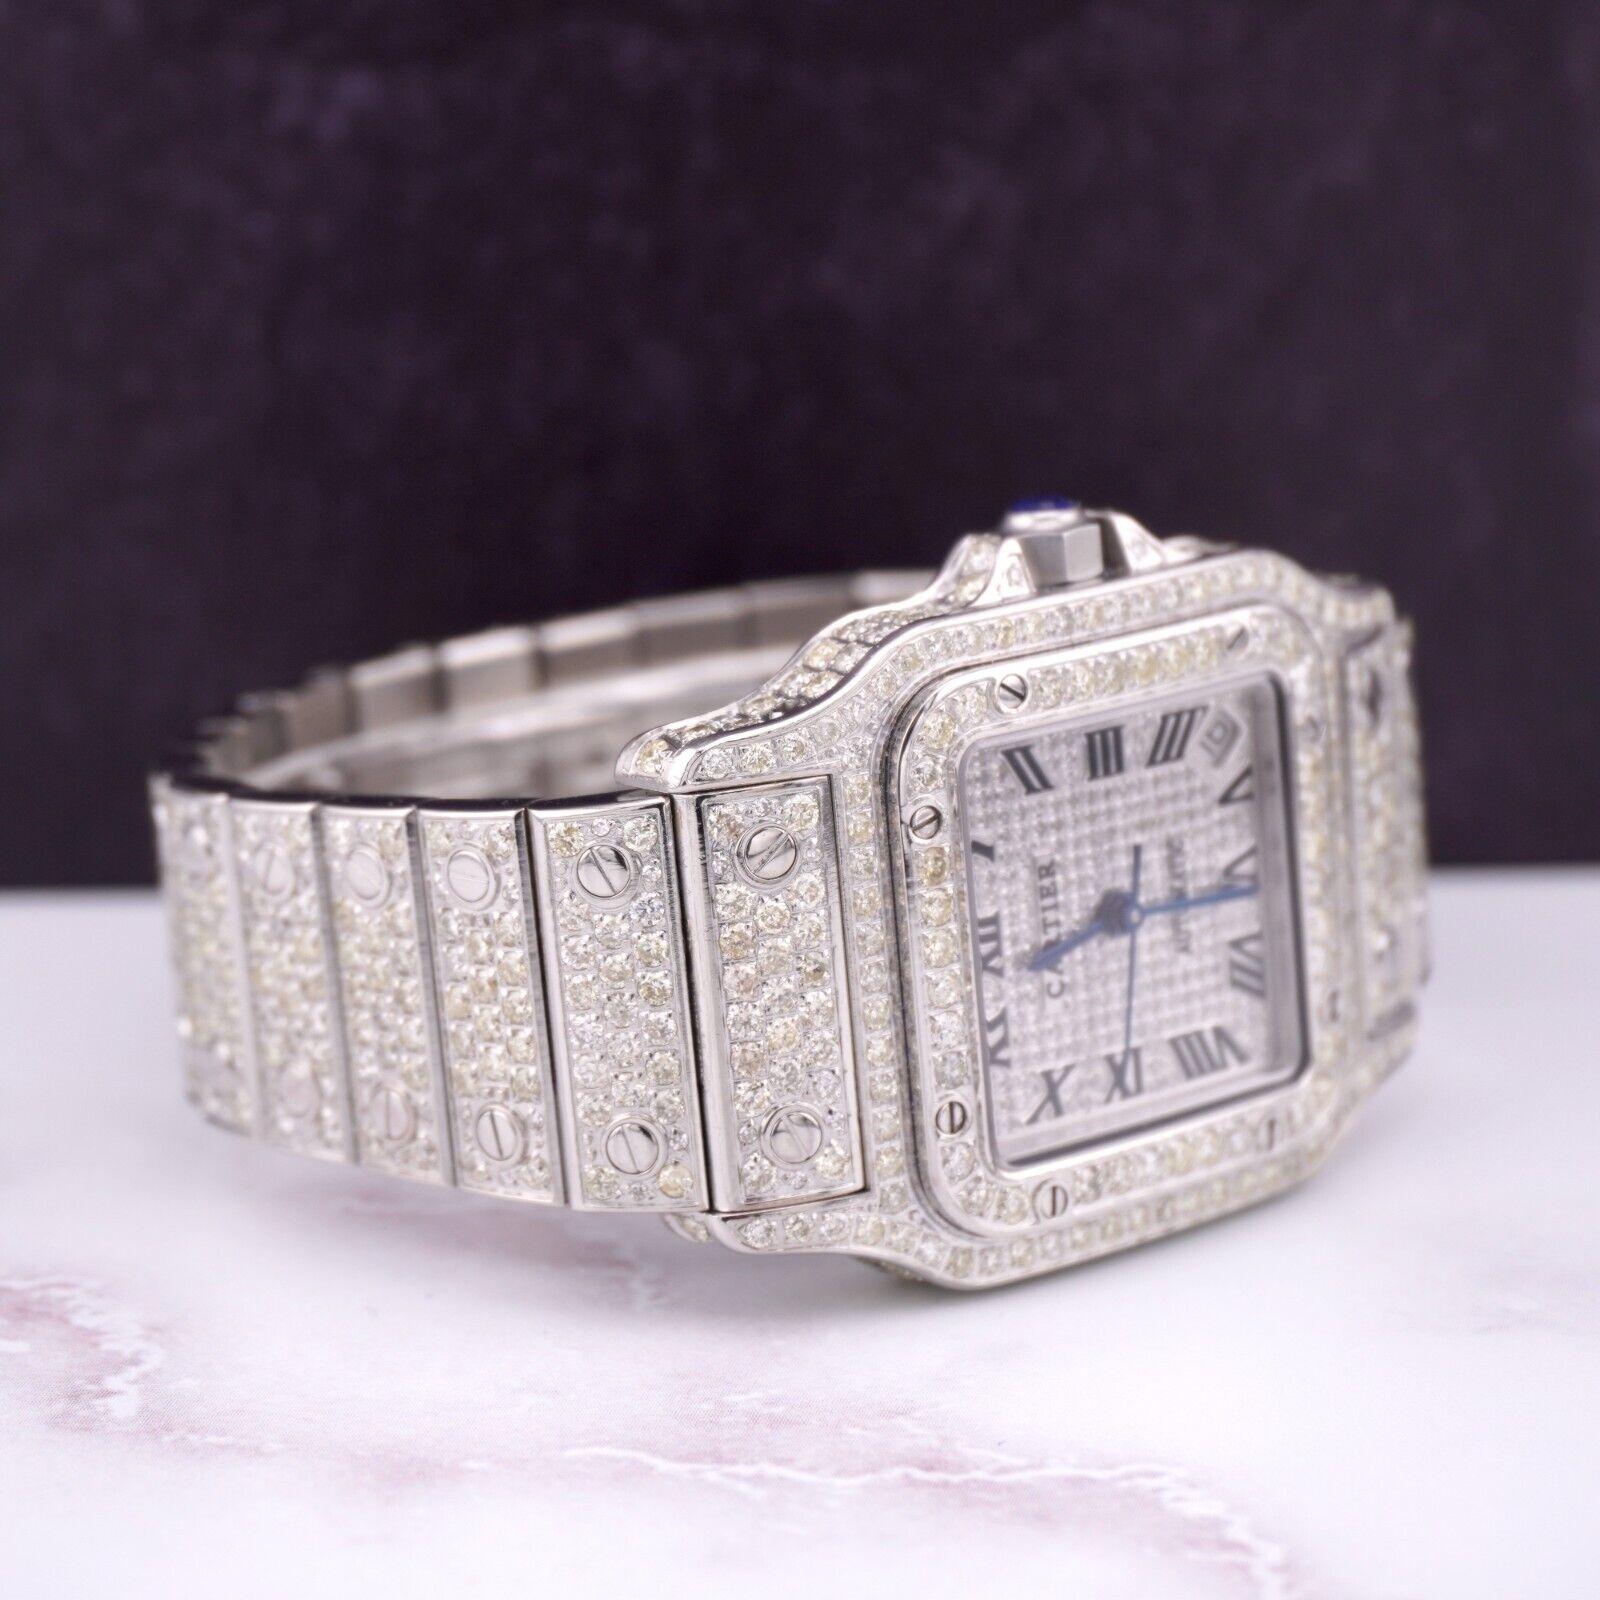 Cartier Santos Galbee 32mm Uhr. Ein Pre-owned Uhr w / Geschenk-Box. Uhr ist 100% authentisch und kommt mit Echtheitskarte. Watch Reference ist 2823 und ist in ausgezeichnetem Zustand (siehe Bilder). Das Zifferblatt hat die Farbe Silber und das